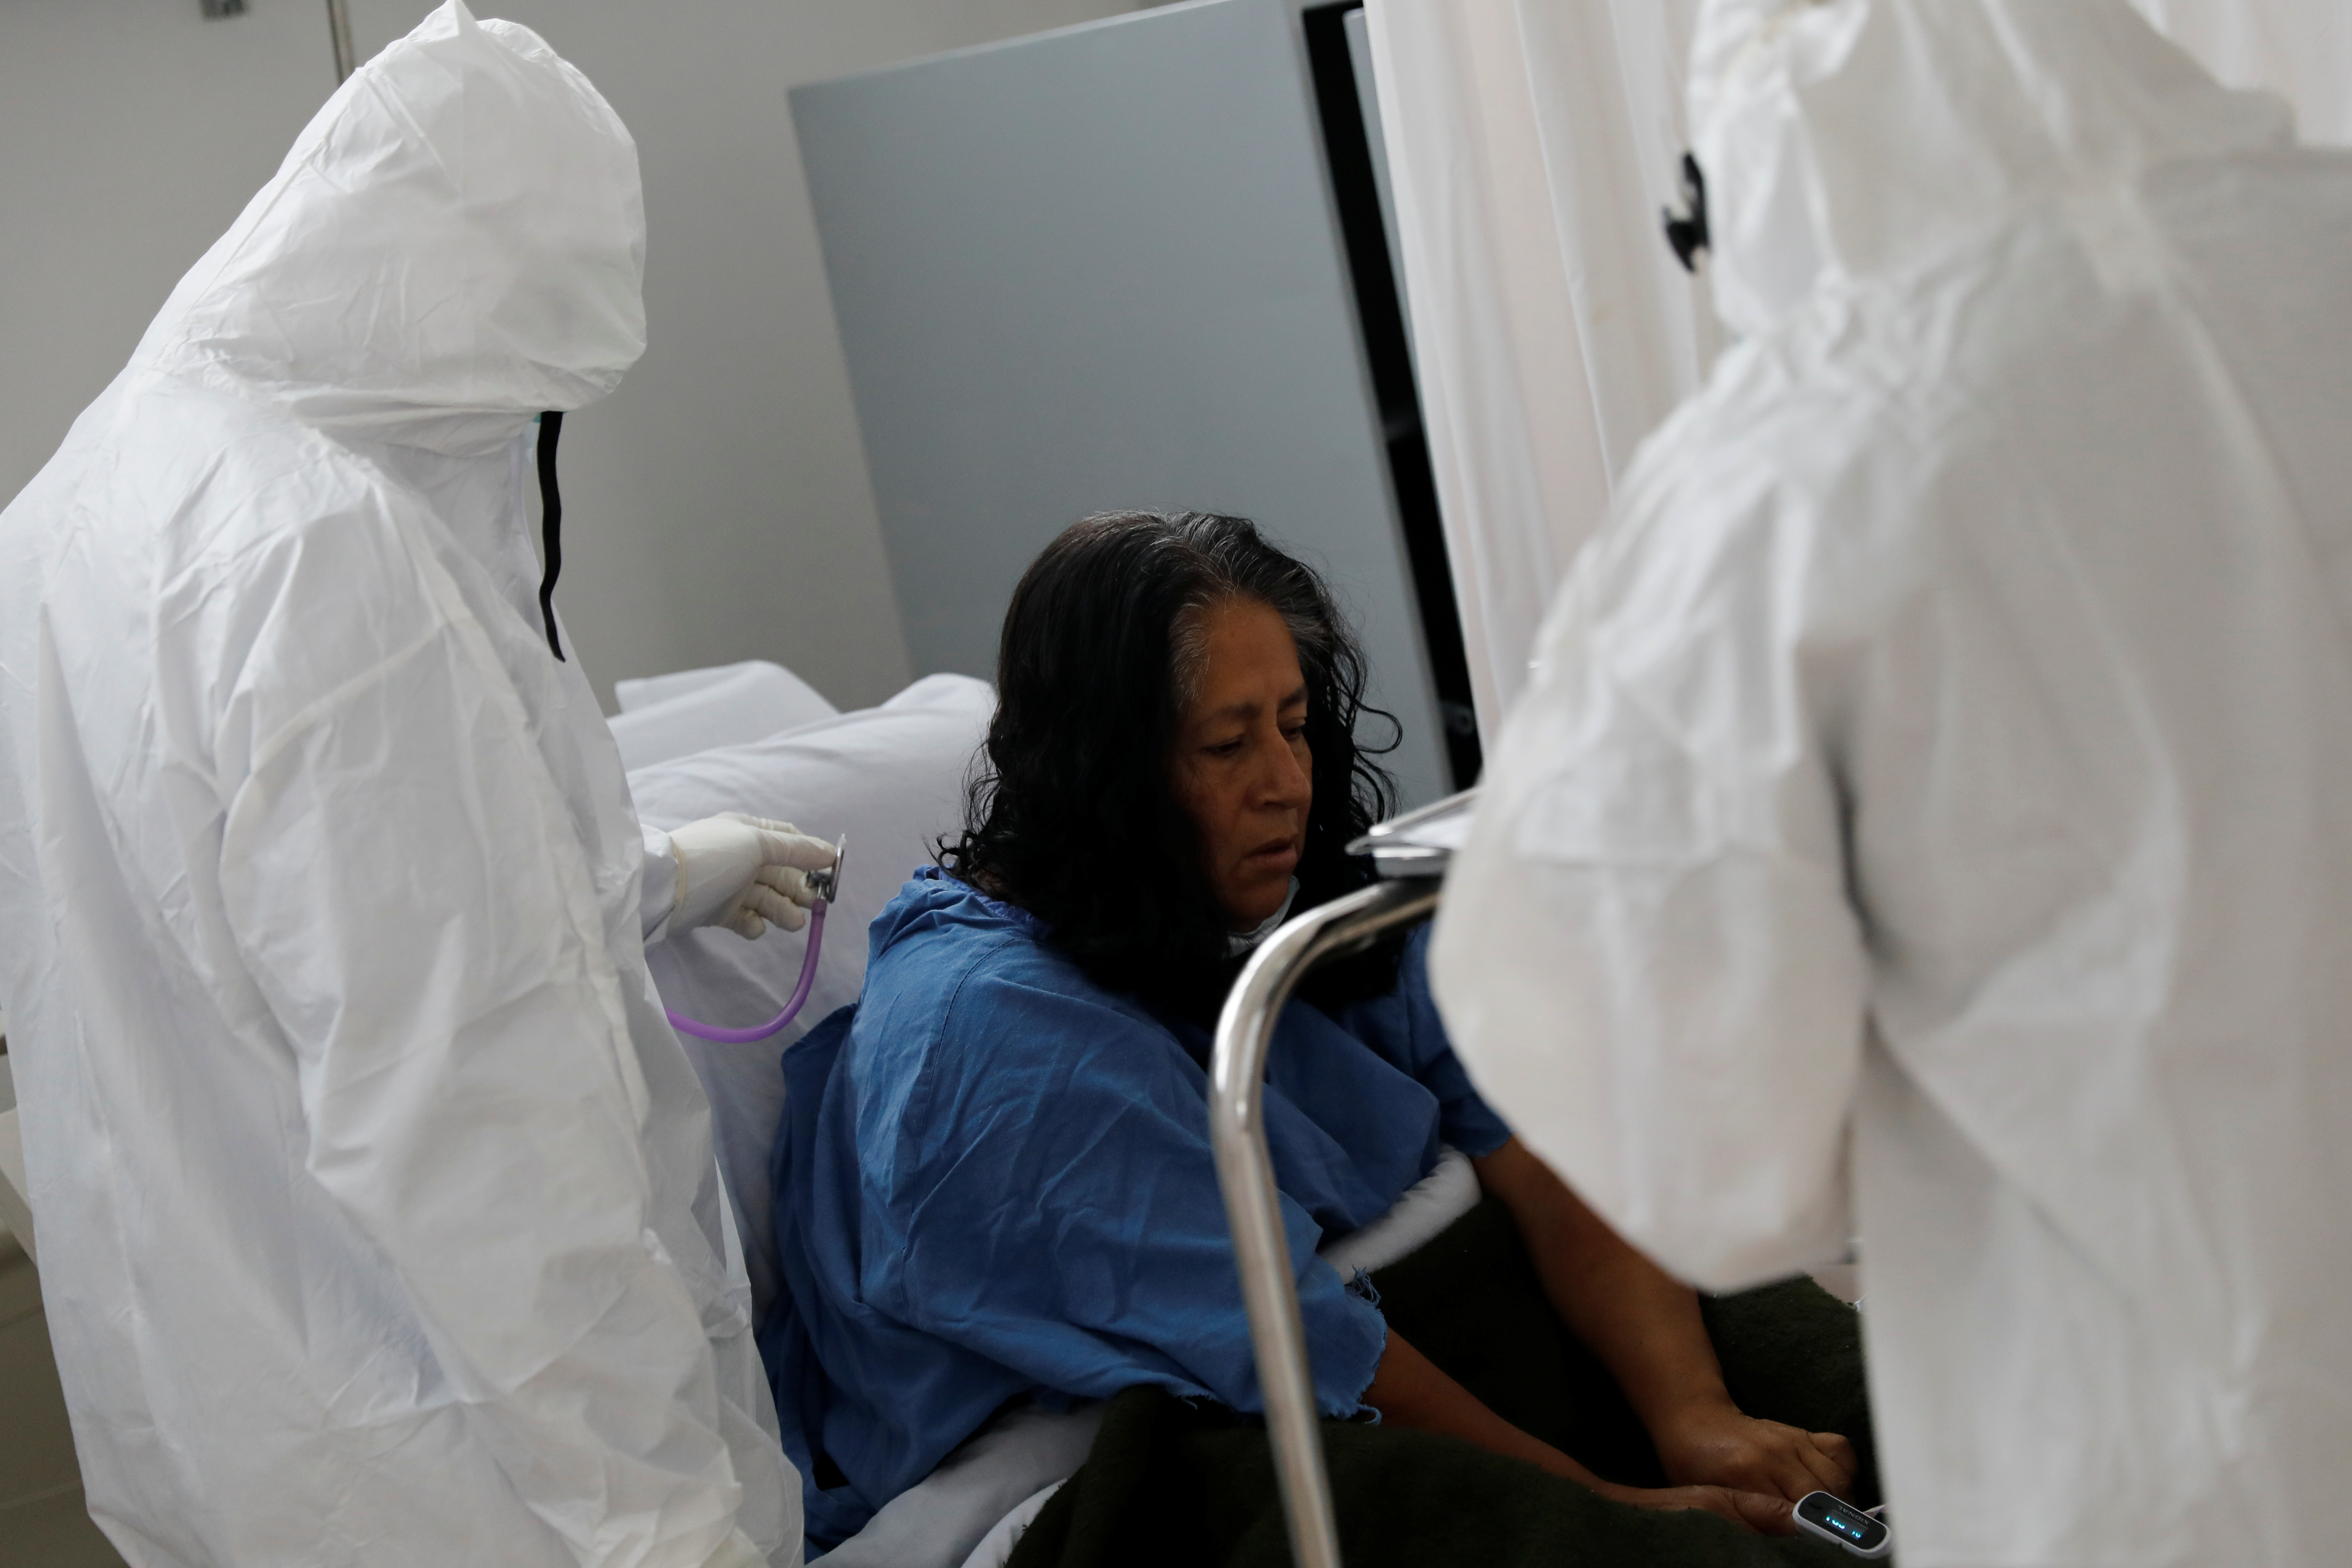 Los médicos todavía están aprendiendo a implementar tratamientos contra el nuevo virus - REUTERS/Carlos Jasso